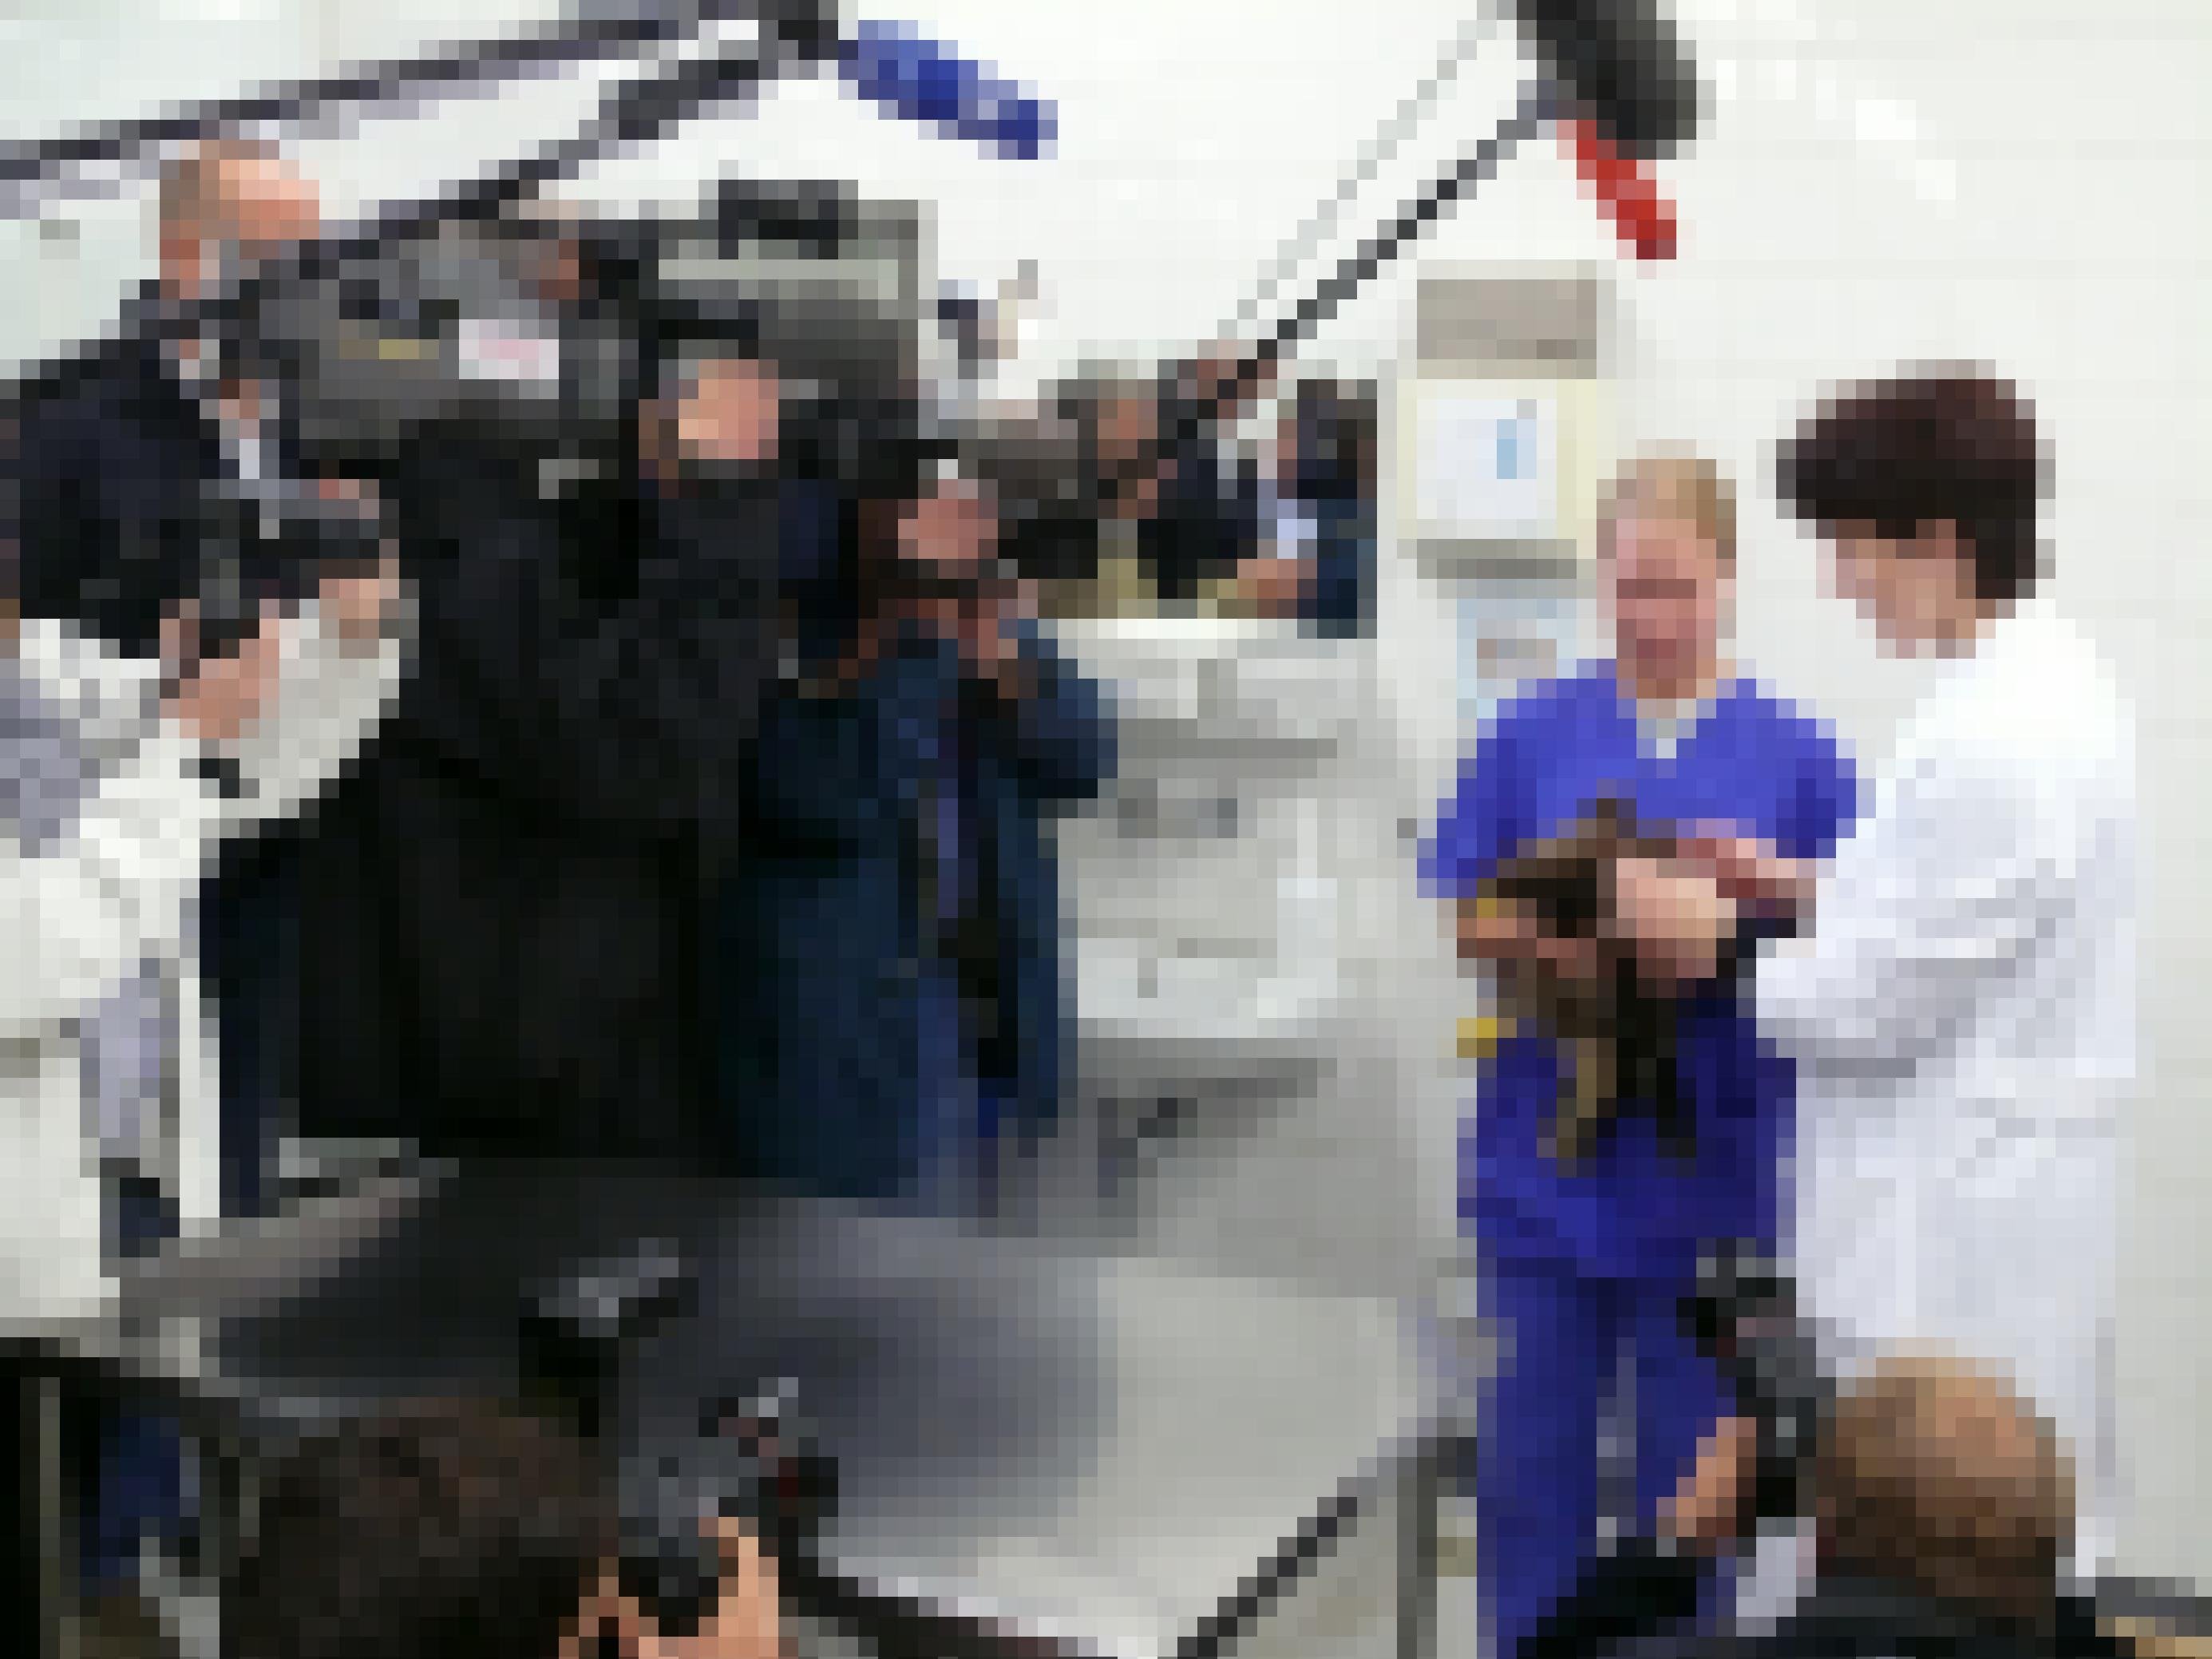 Viele Fotografen um den Adler herum, der von einem Tierarzt in einem weißen Kittel gehalten wird.